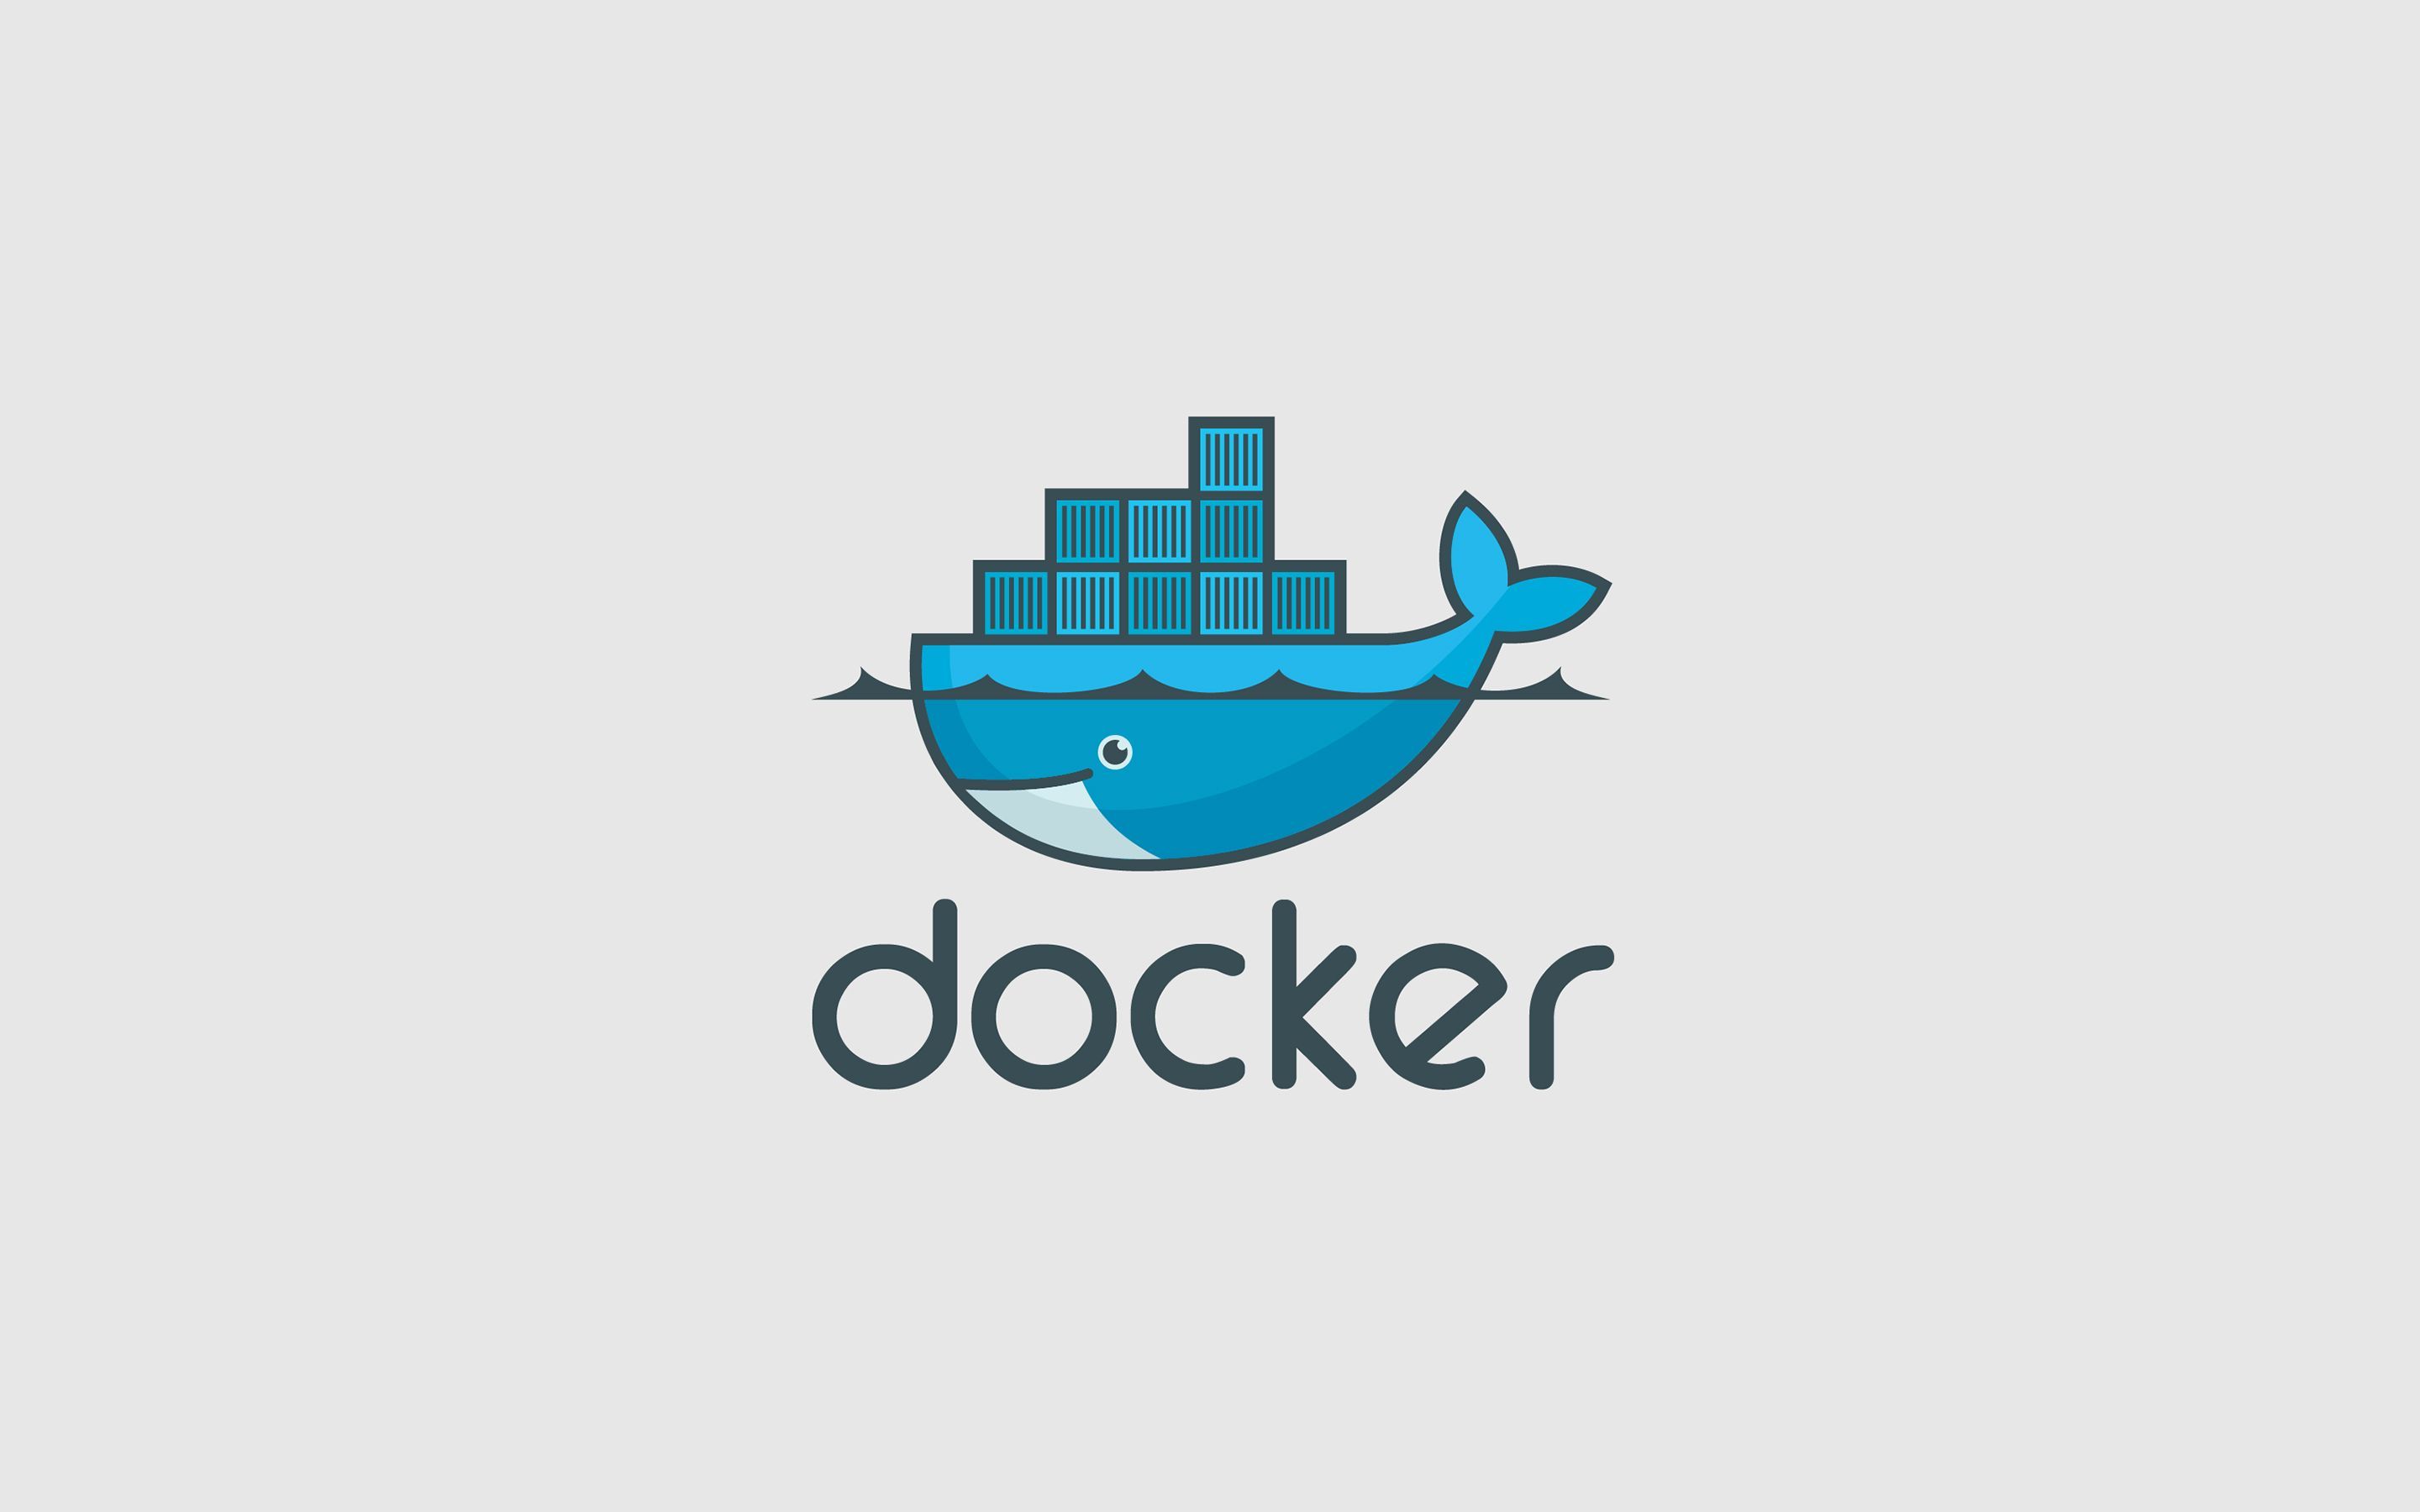 Docker Wallpaper Free Docker Background